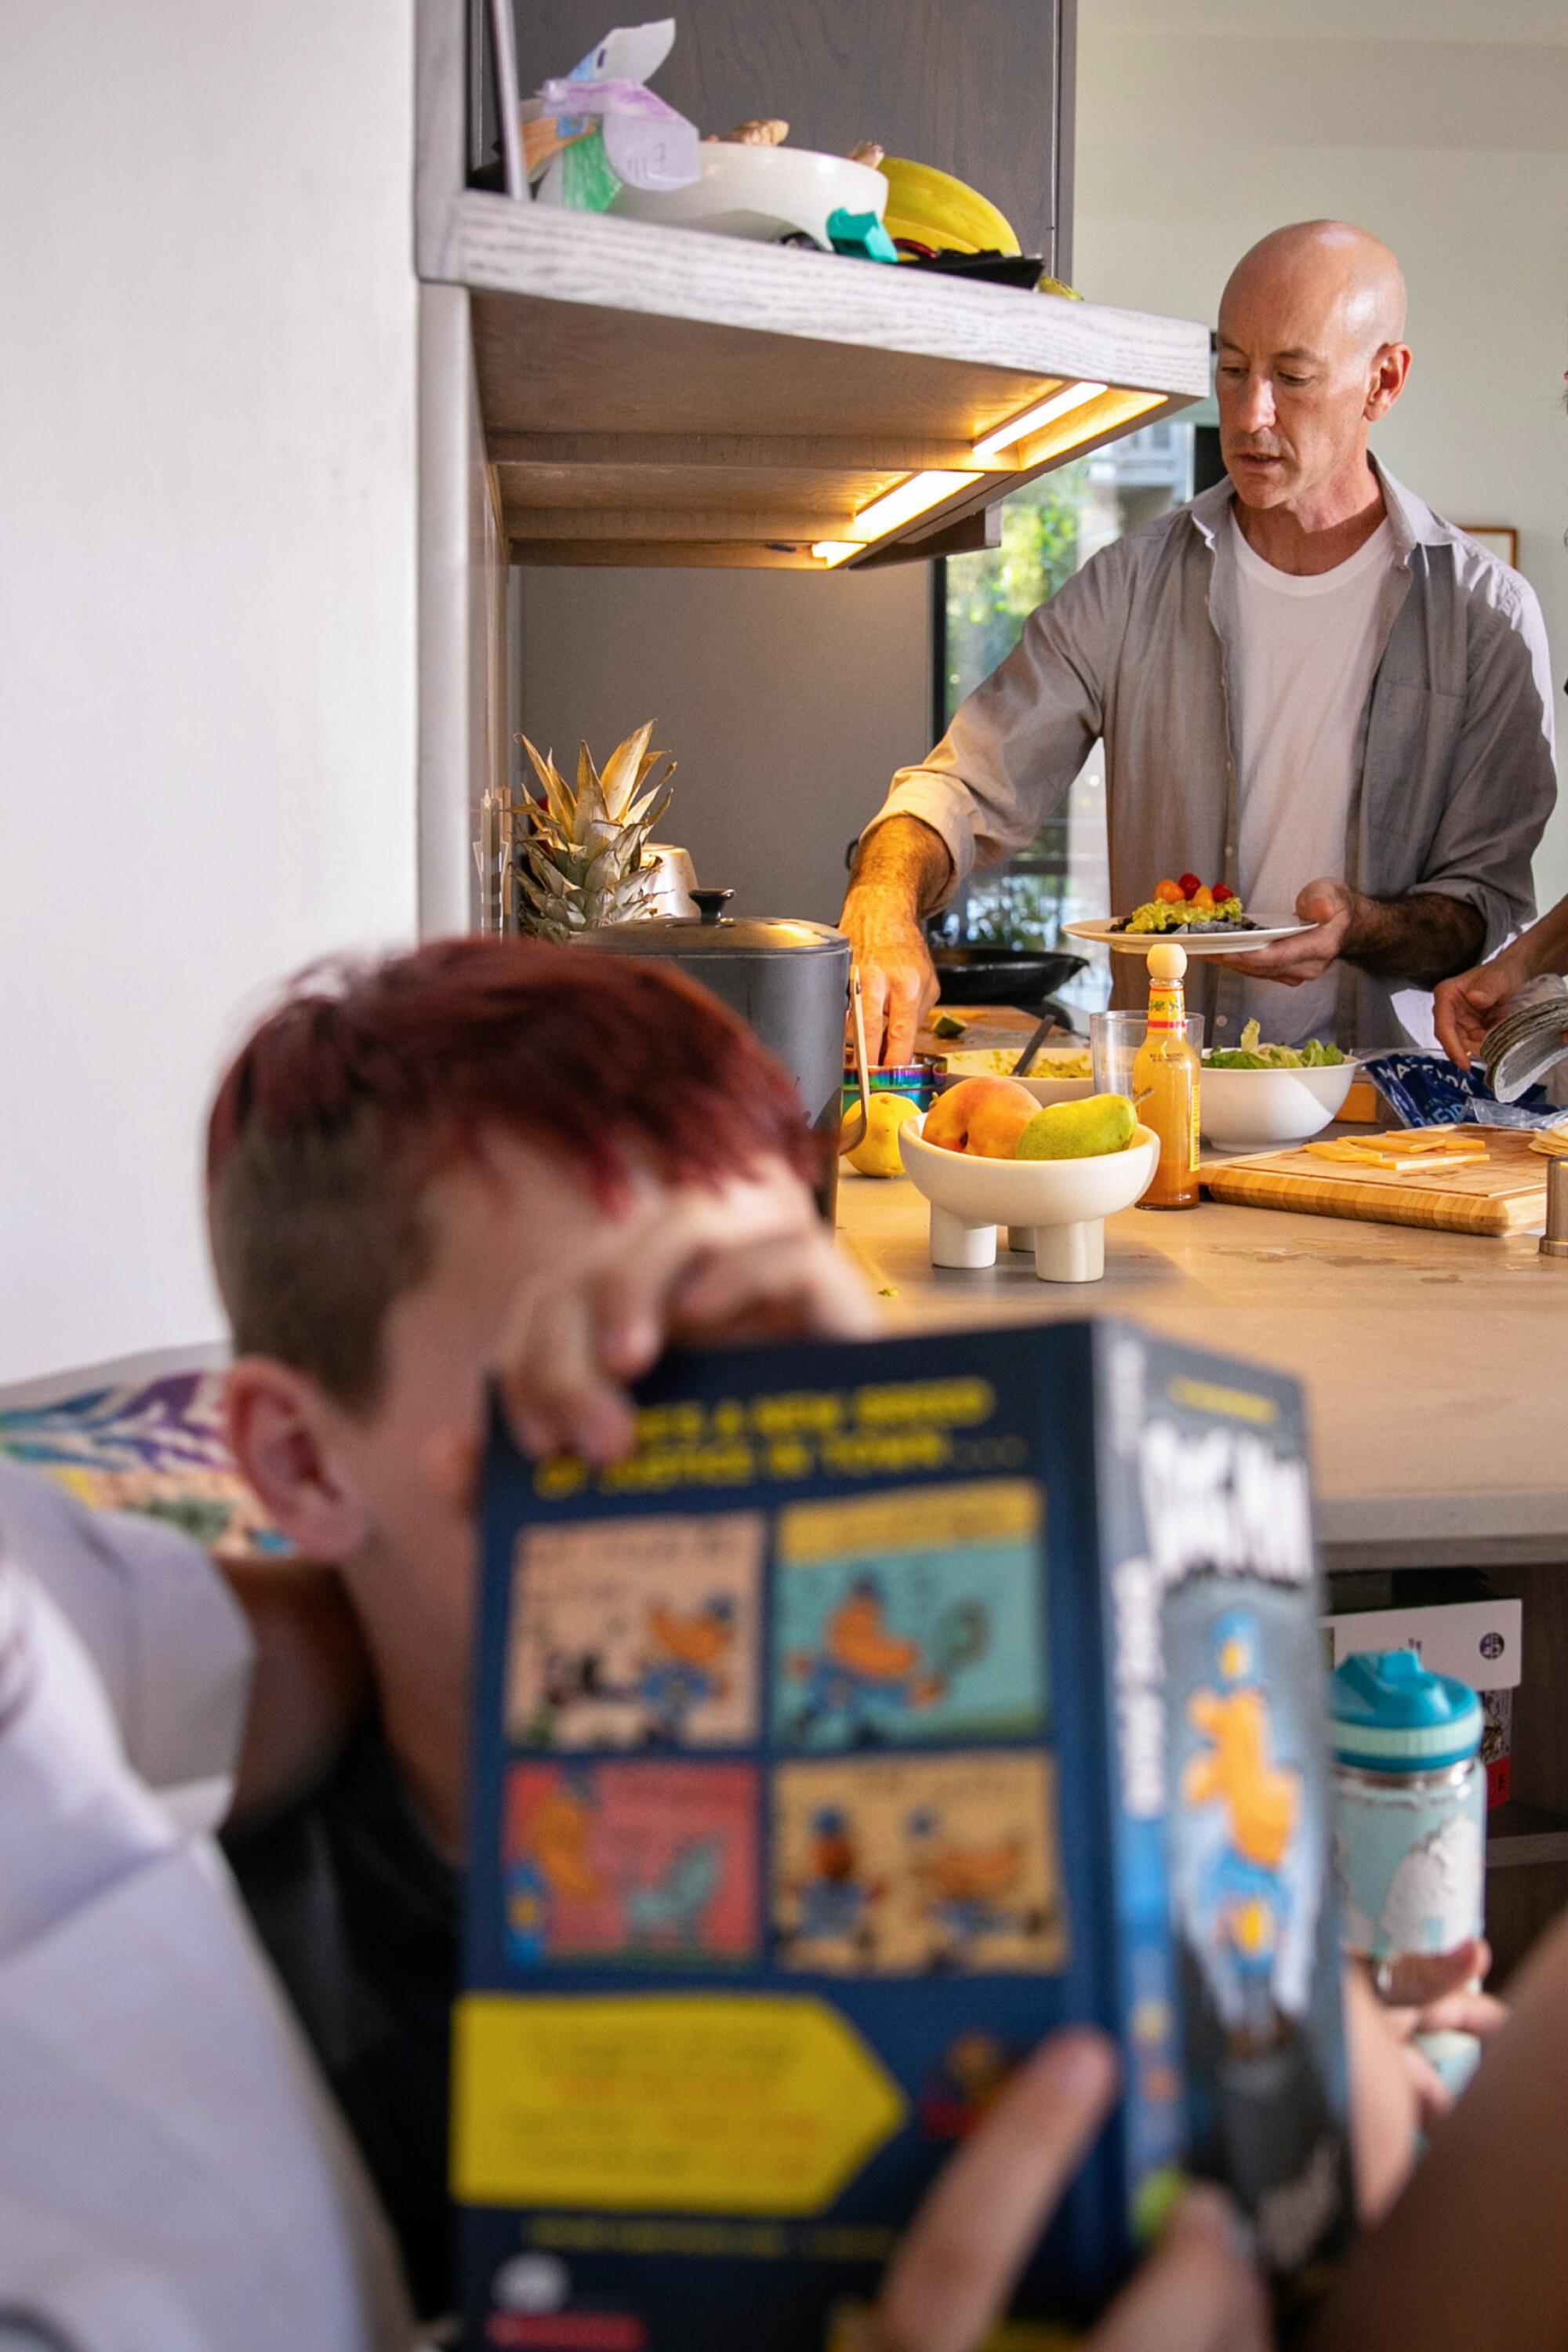 Ein Mann bereitet das Abendessen in der Küche zu, während ein Kind in einer Ecke nebenan liest.